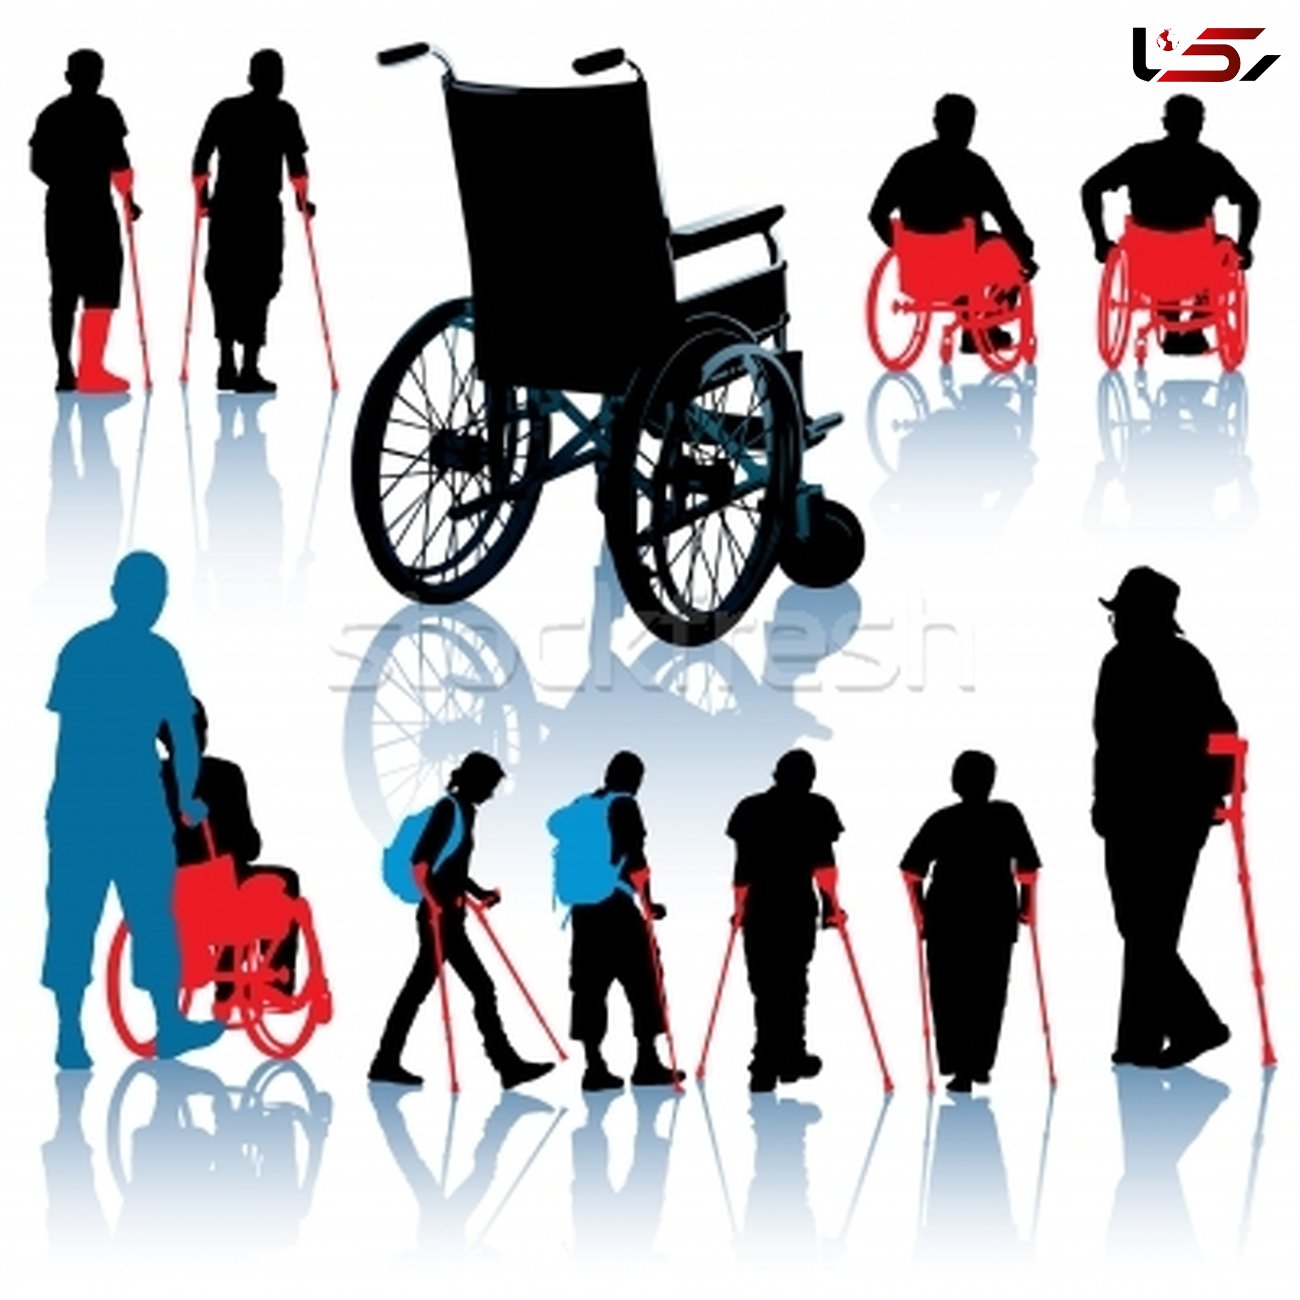 وعده شهردار سنندج به معلولان برای ساختن شهرک مسکونی با تمام امکانات ویژه